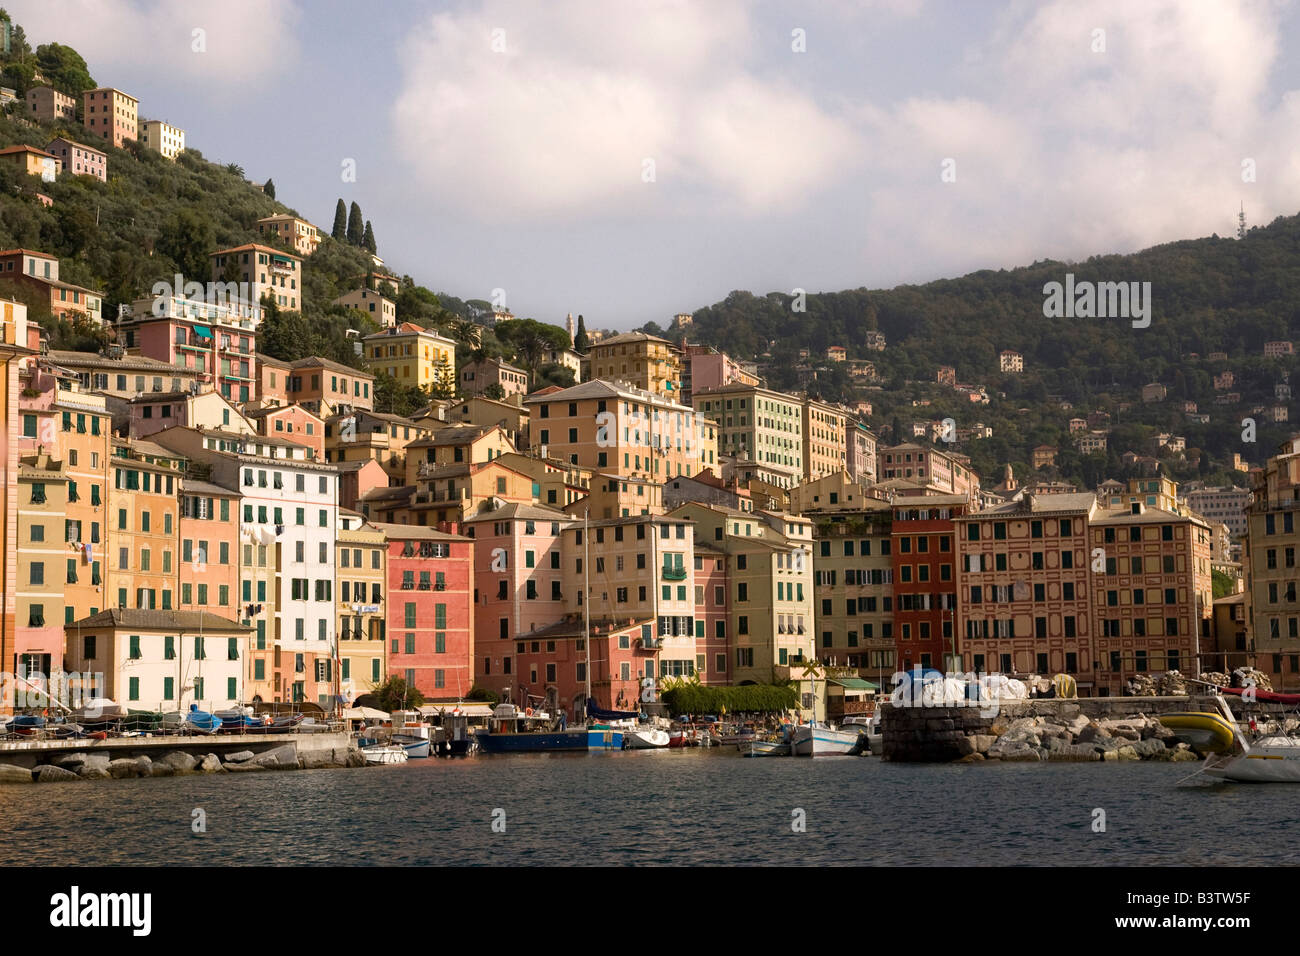 L'Europe, Italie, Camogli. Bateaux amarrés dans le port avec les bâtiments de la ville en arrière-plan coloré. Banque D'Images